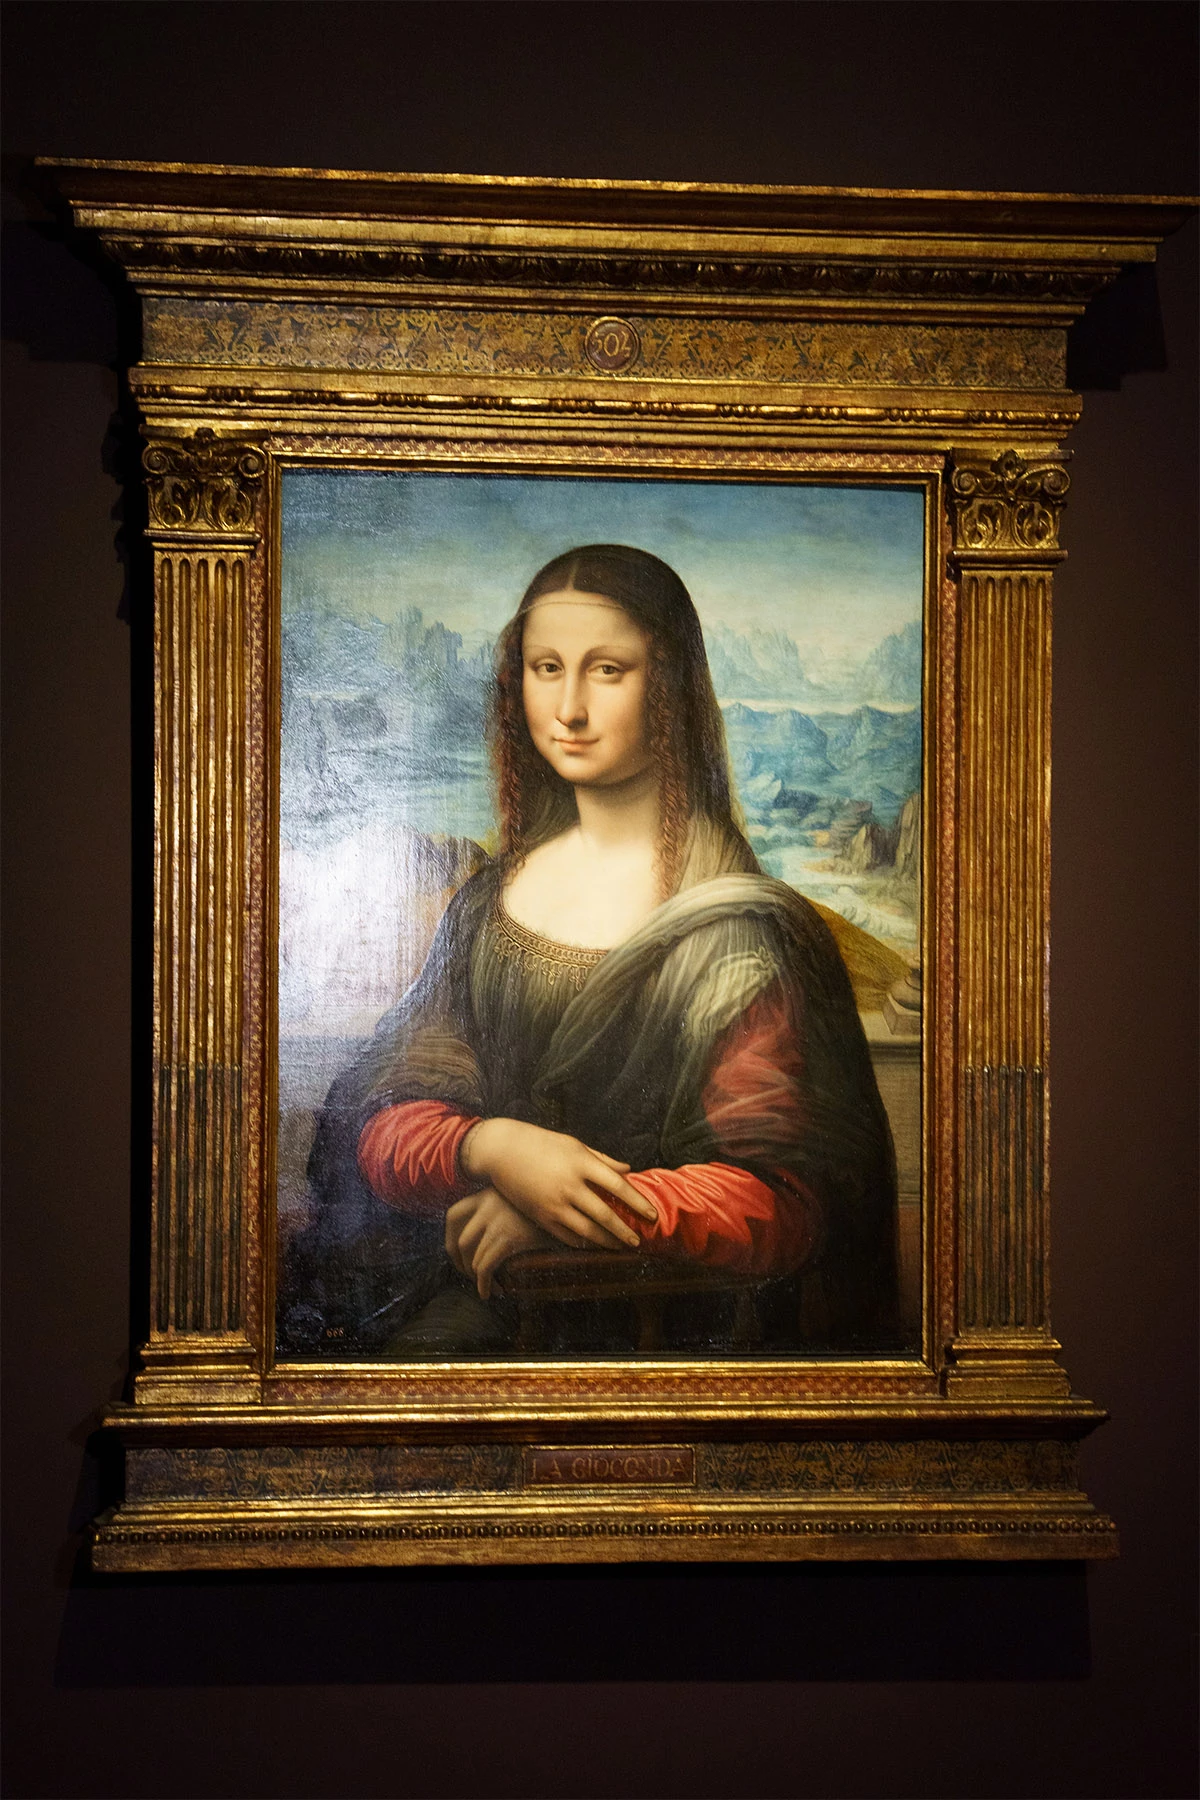 <p>Копия картины &laquo;Мона Лиза&raquo; на выставке в Музее Прадо в Мадриде (Испания) в 2021 году. Выставка была посвящена копиям и версиям картин, сделанным в мастерской Леонардо да Винчи при его жизни</p>